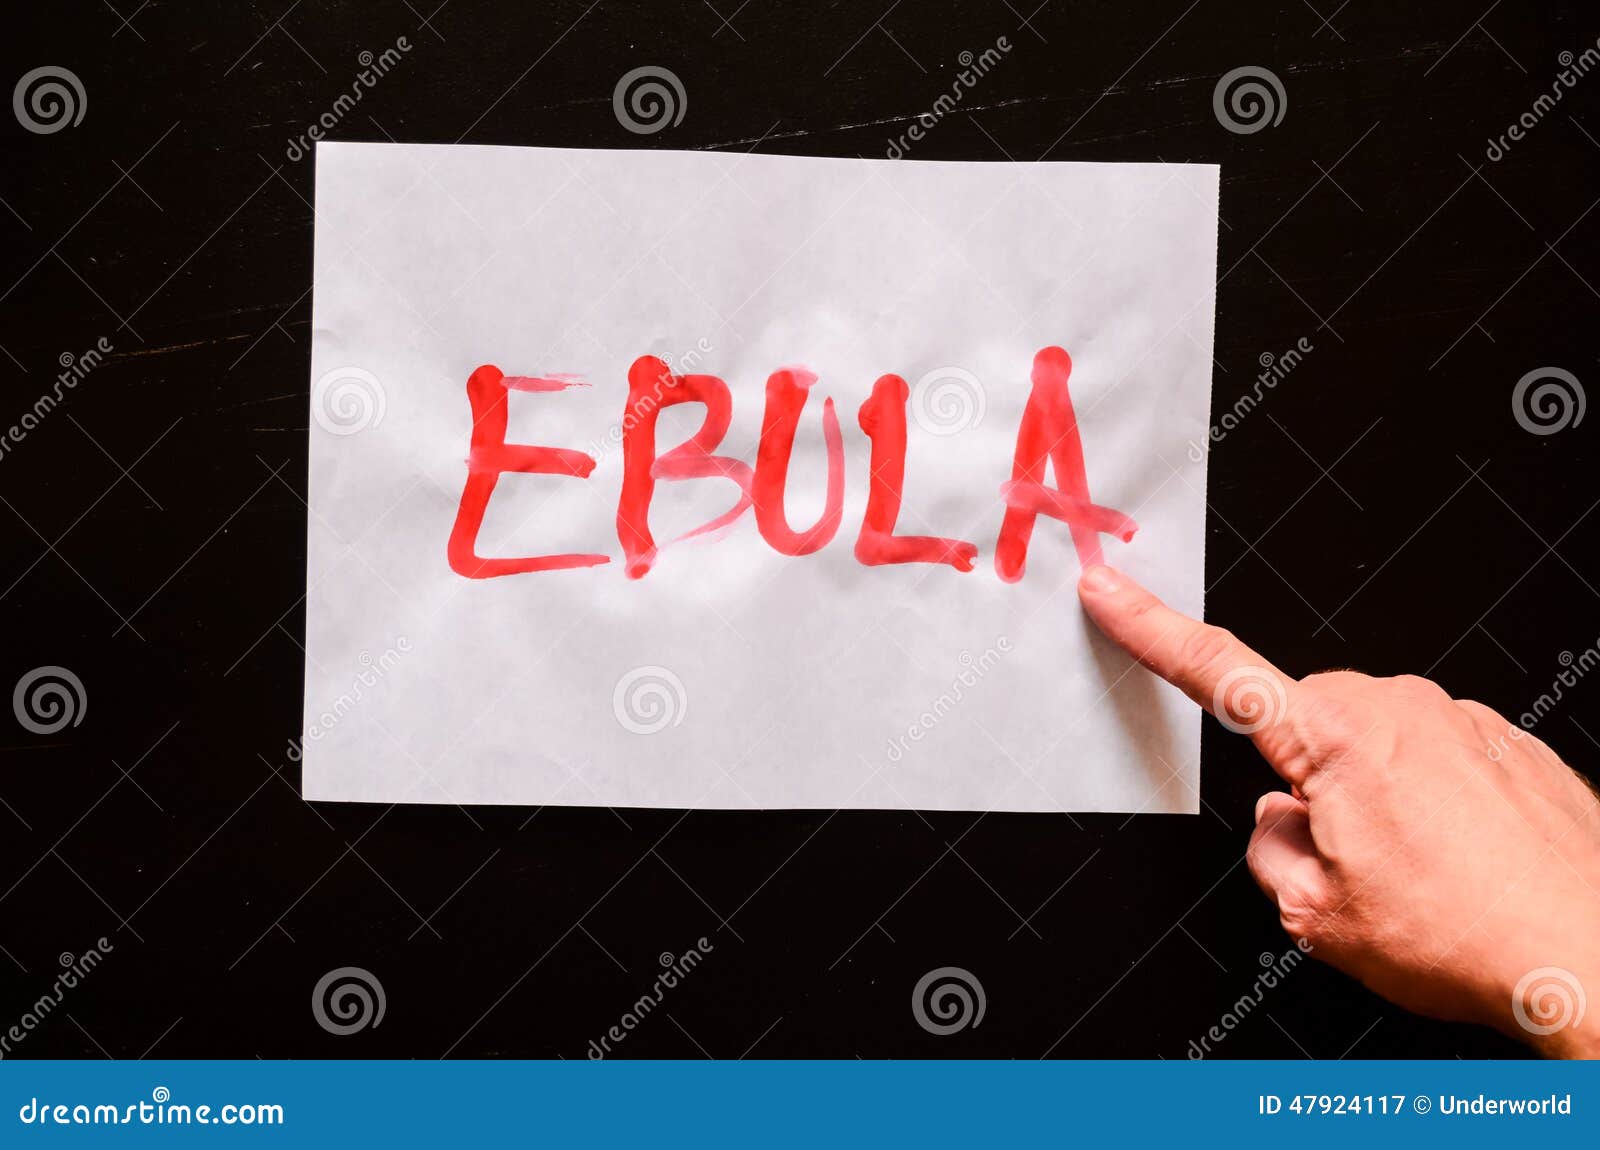 ebola paper